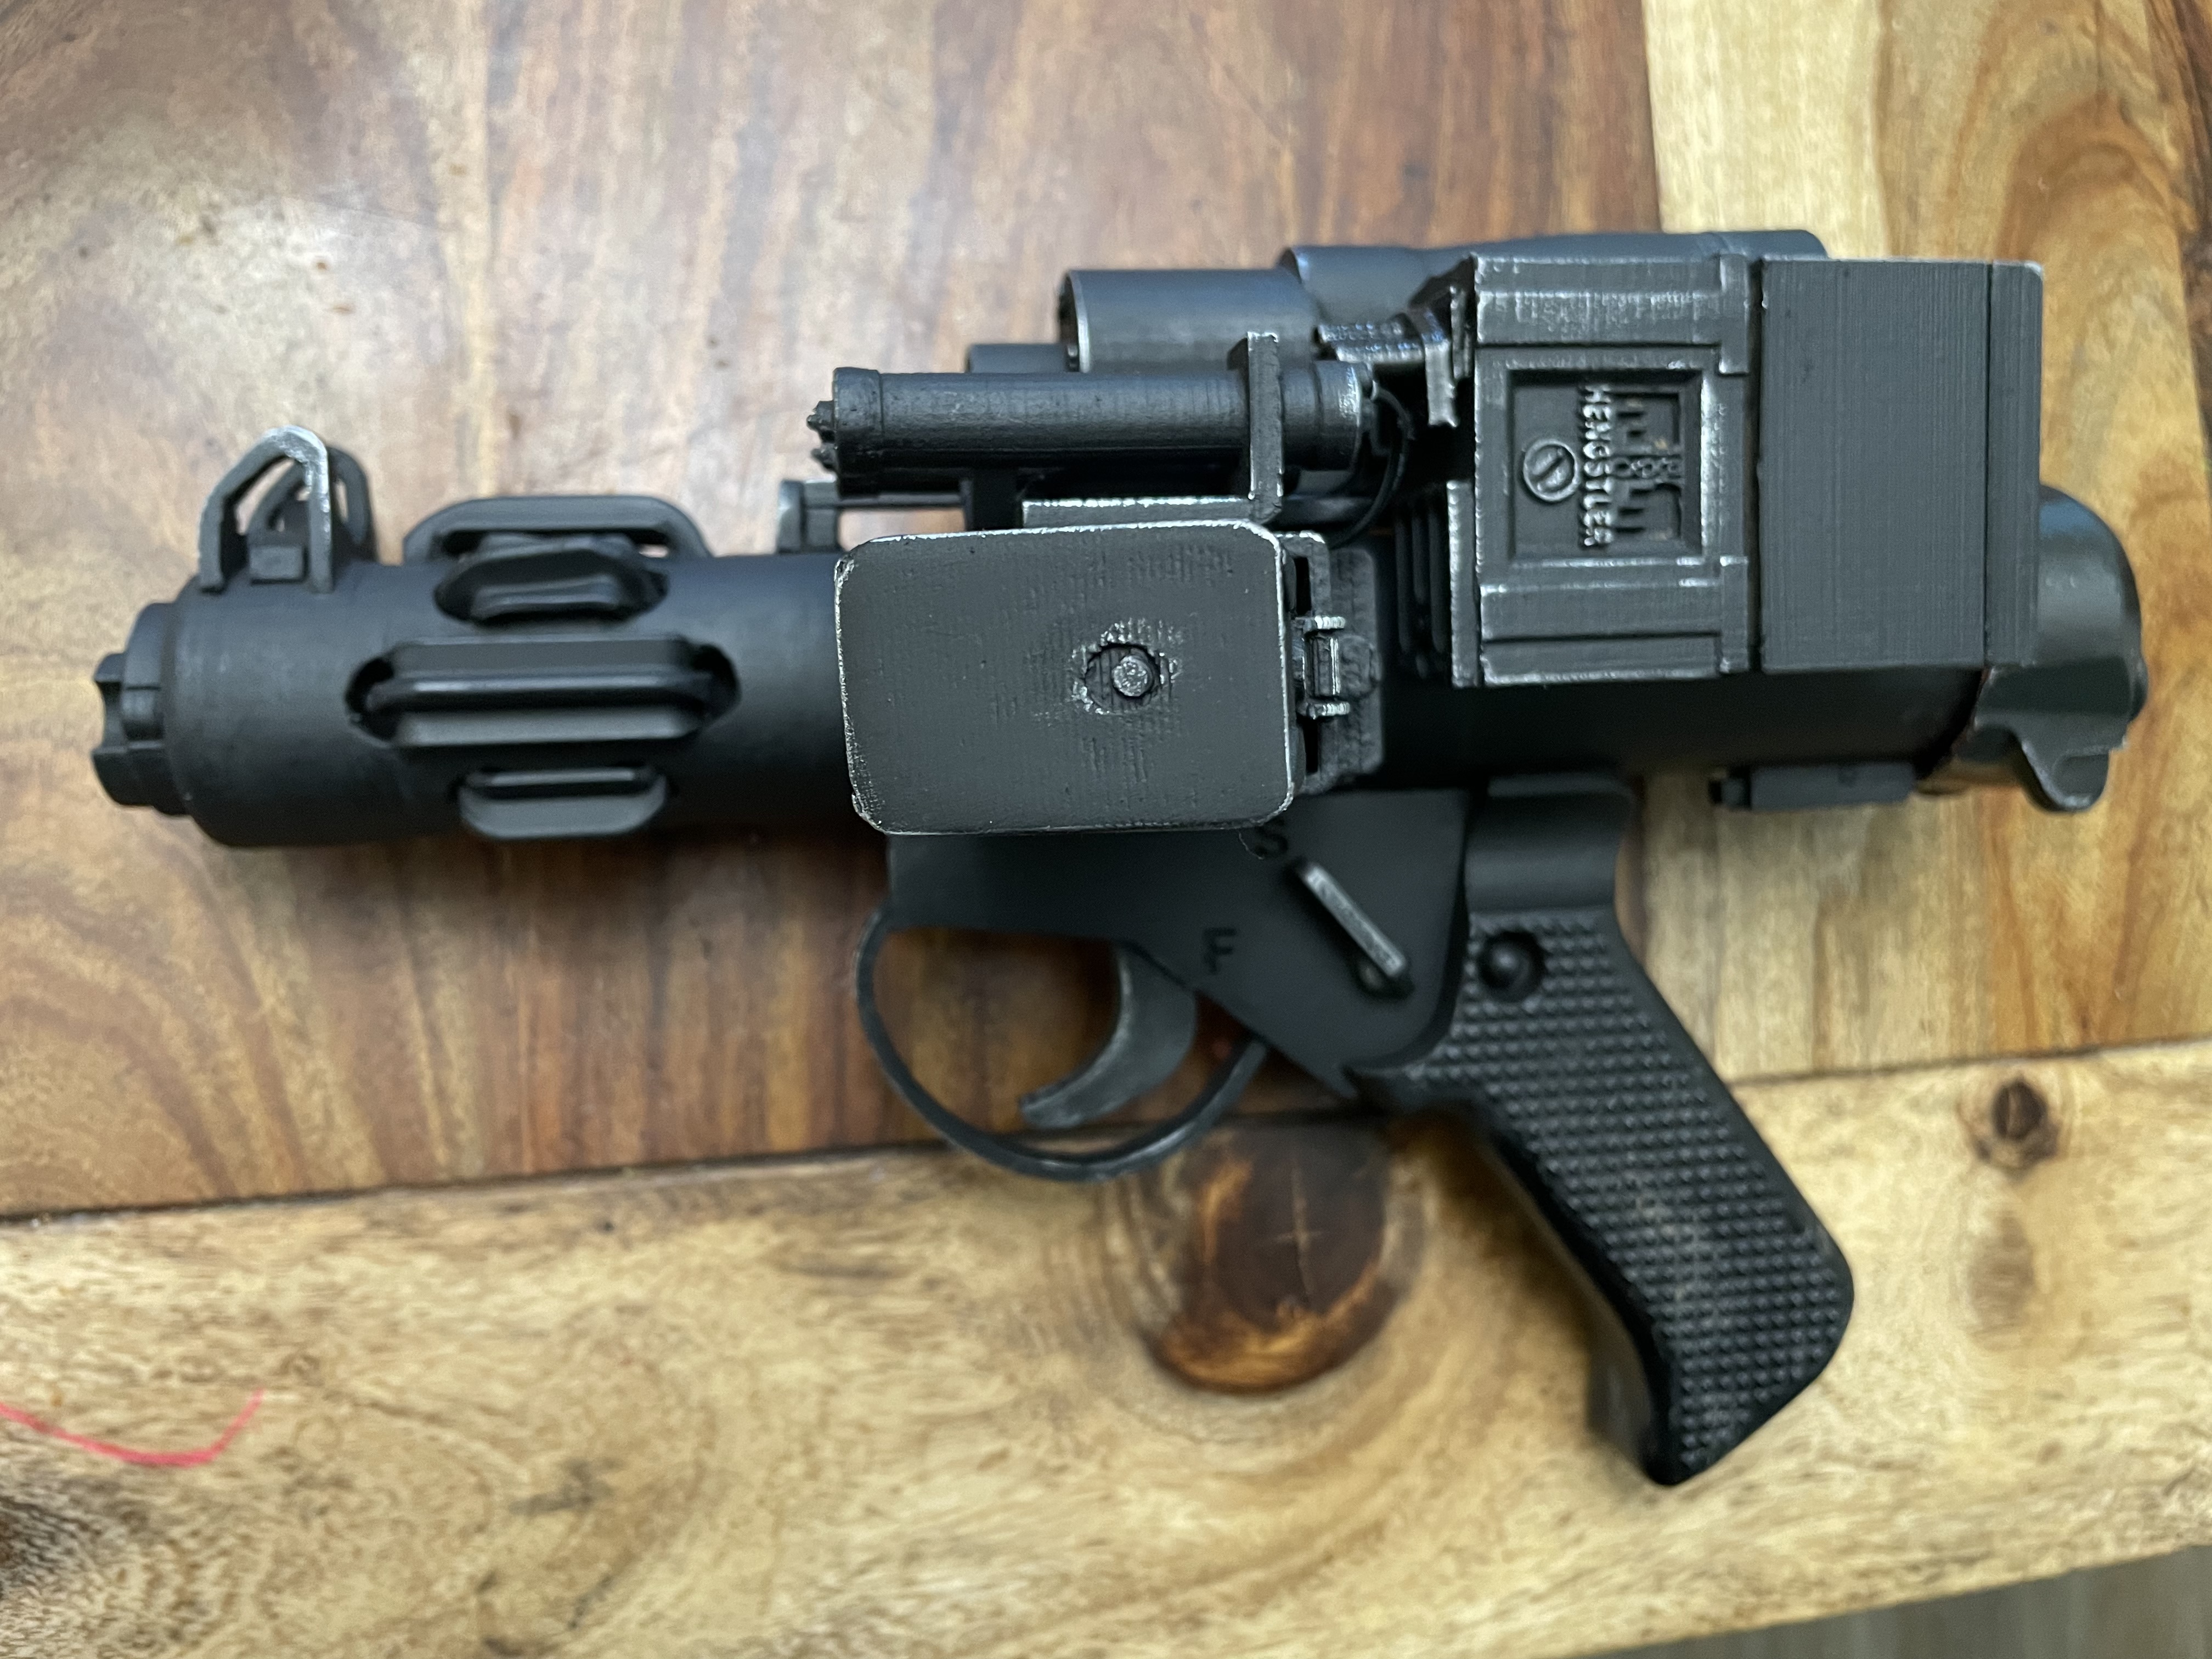 E-11 pistol (I've dubbed it the E-9) | RPF Costume and Prop Maker